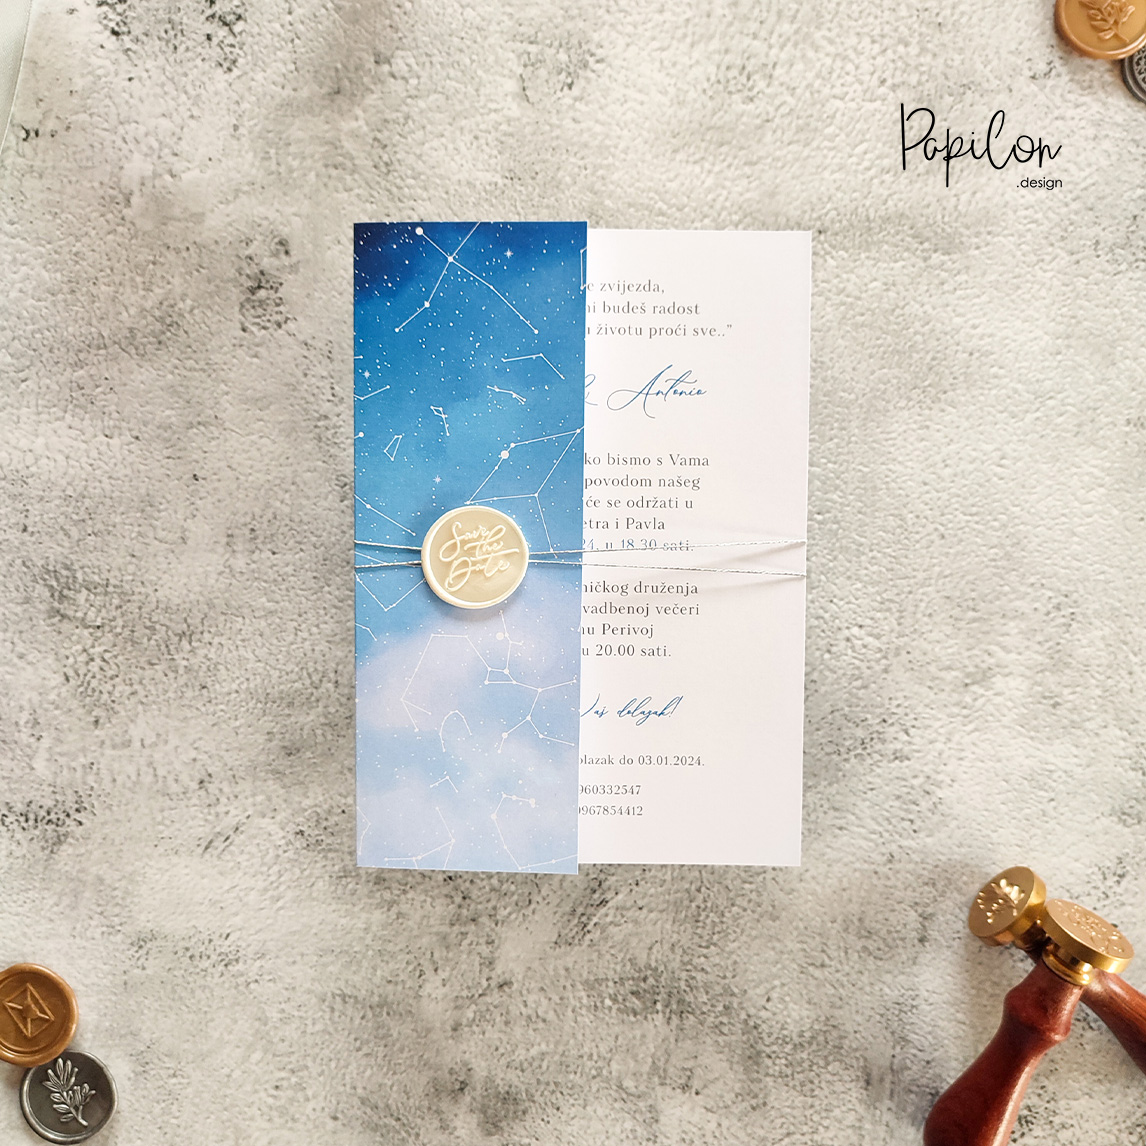 papilon design zagreb pozivnice za vjenčanje prikaz zvjezdanog neba sky art